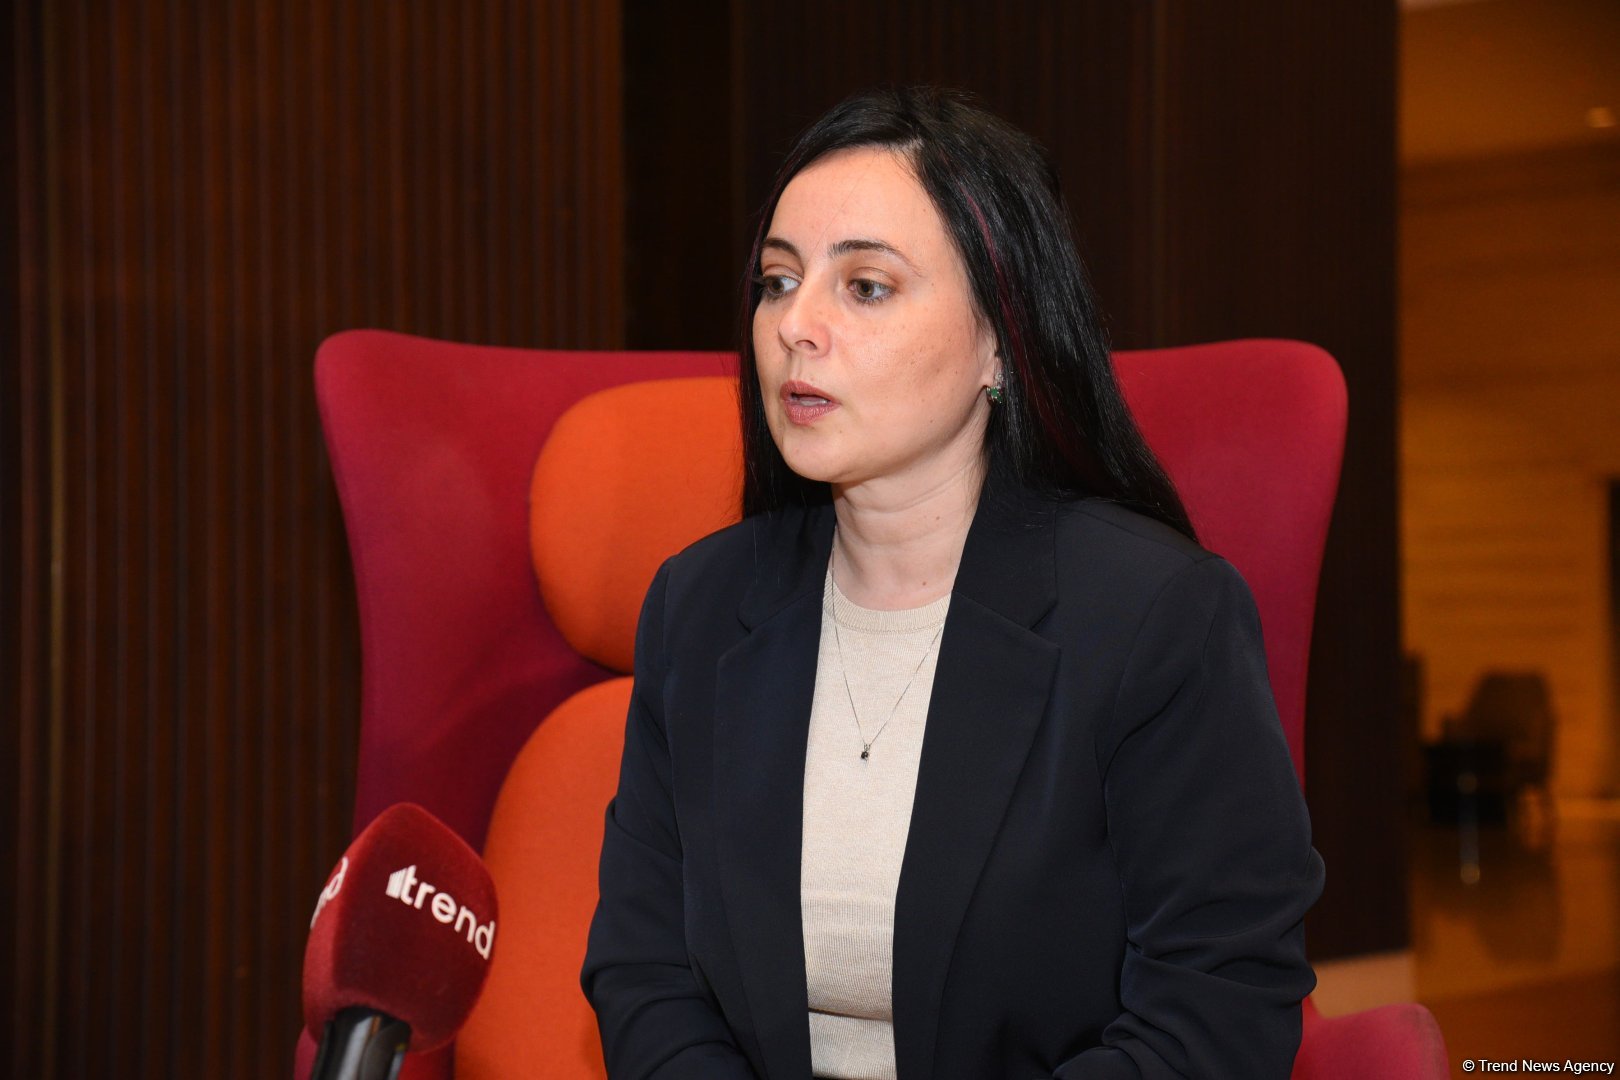 Израильские бизнесмены заинтересованы в сотрудничестве с Азербайджаном во всех отраслях - Элина Бардач-Ялова (Интервью) (ФОТО)